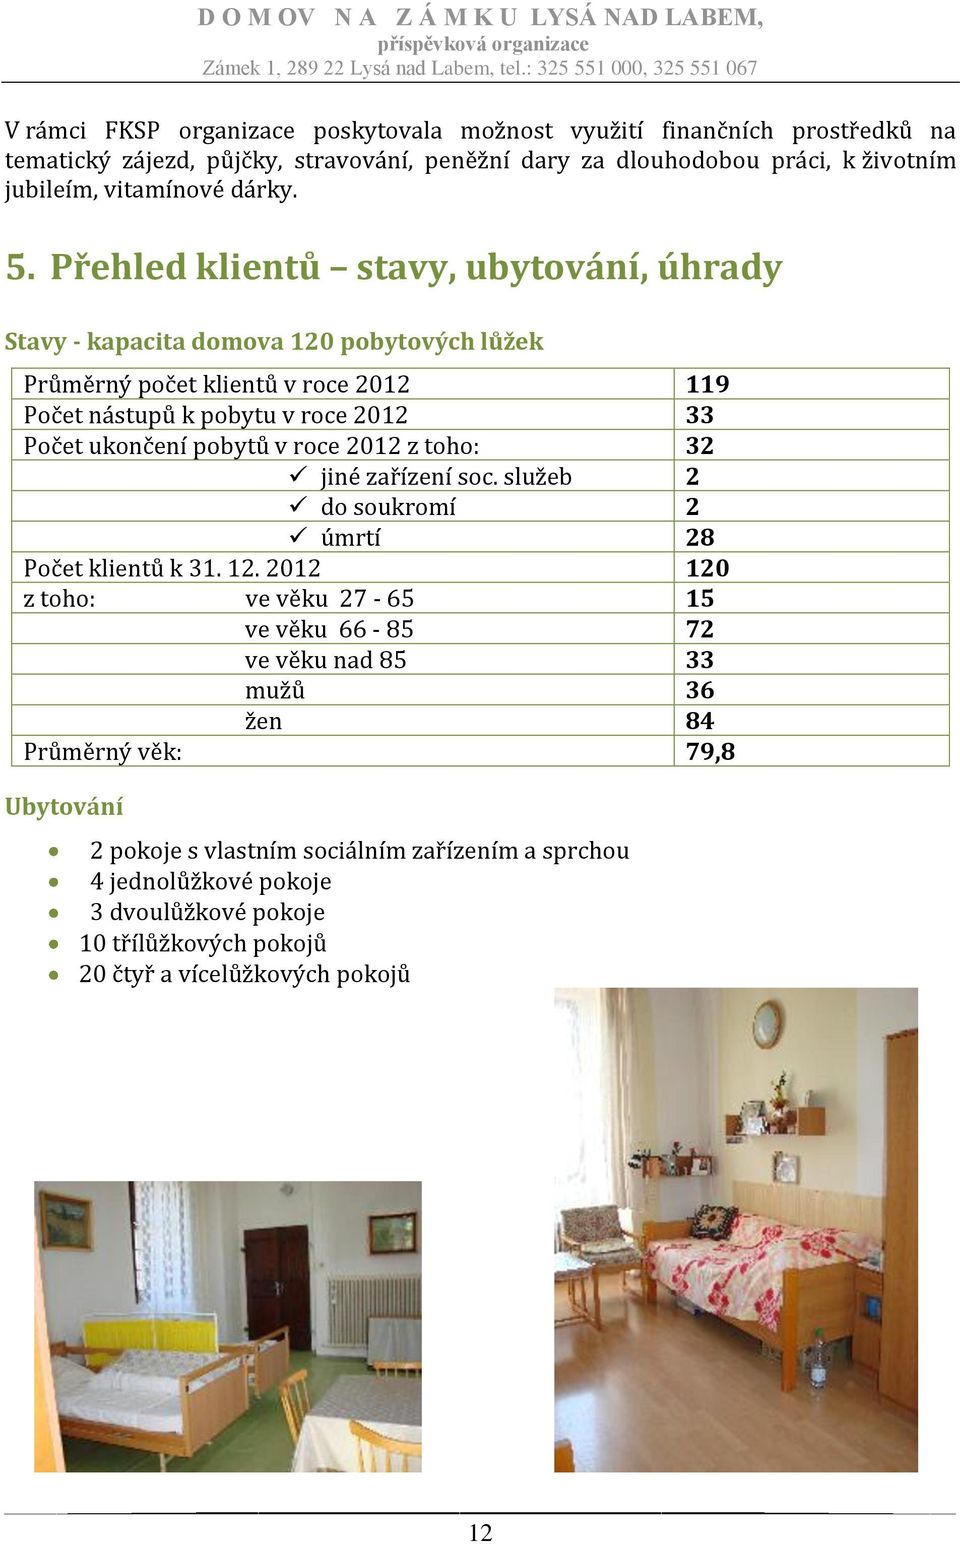 Přehled klientů stavy, ubytování, úhrady Stavy - kapacita domova 120 pobytových lůžek Průměrný počet klientů v roce 2012 119 Počet nástupů k pobytu v roce 2012 33 Počet ukončení pobytů